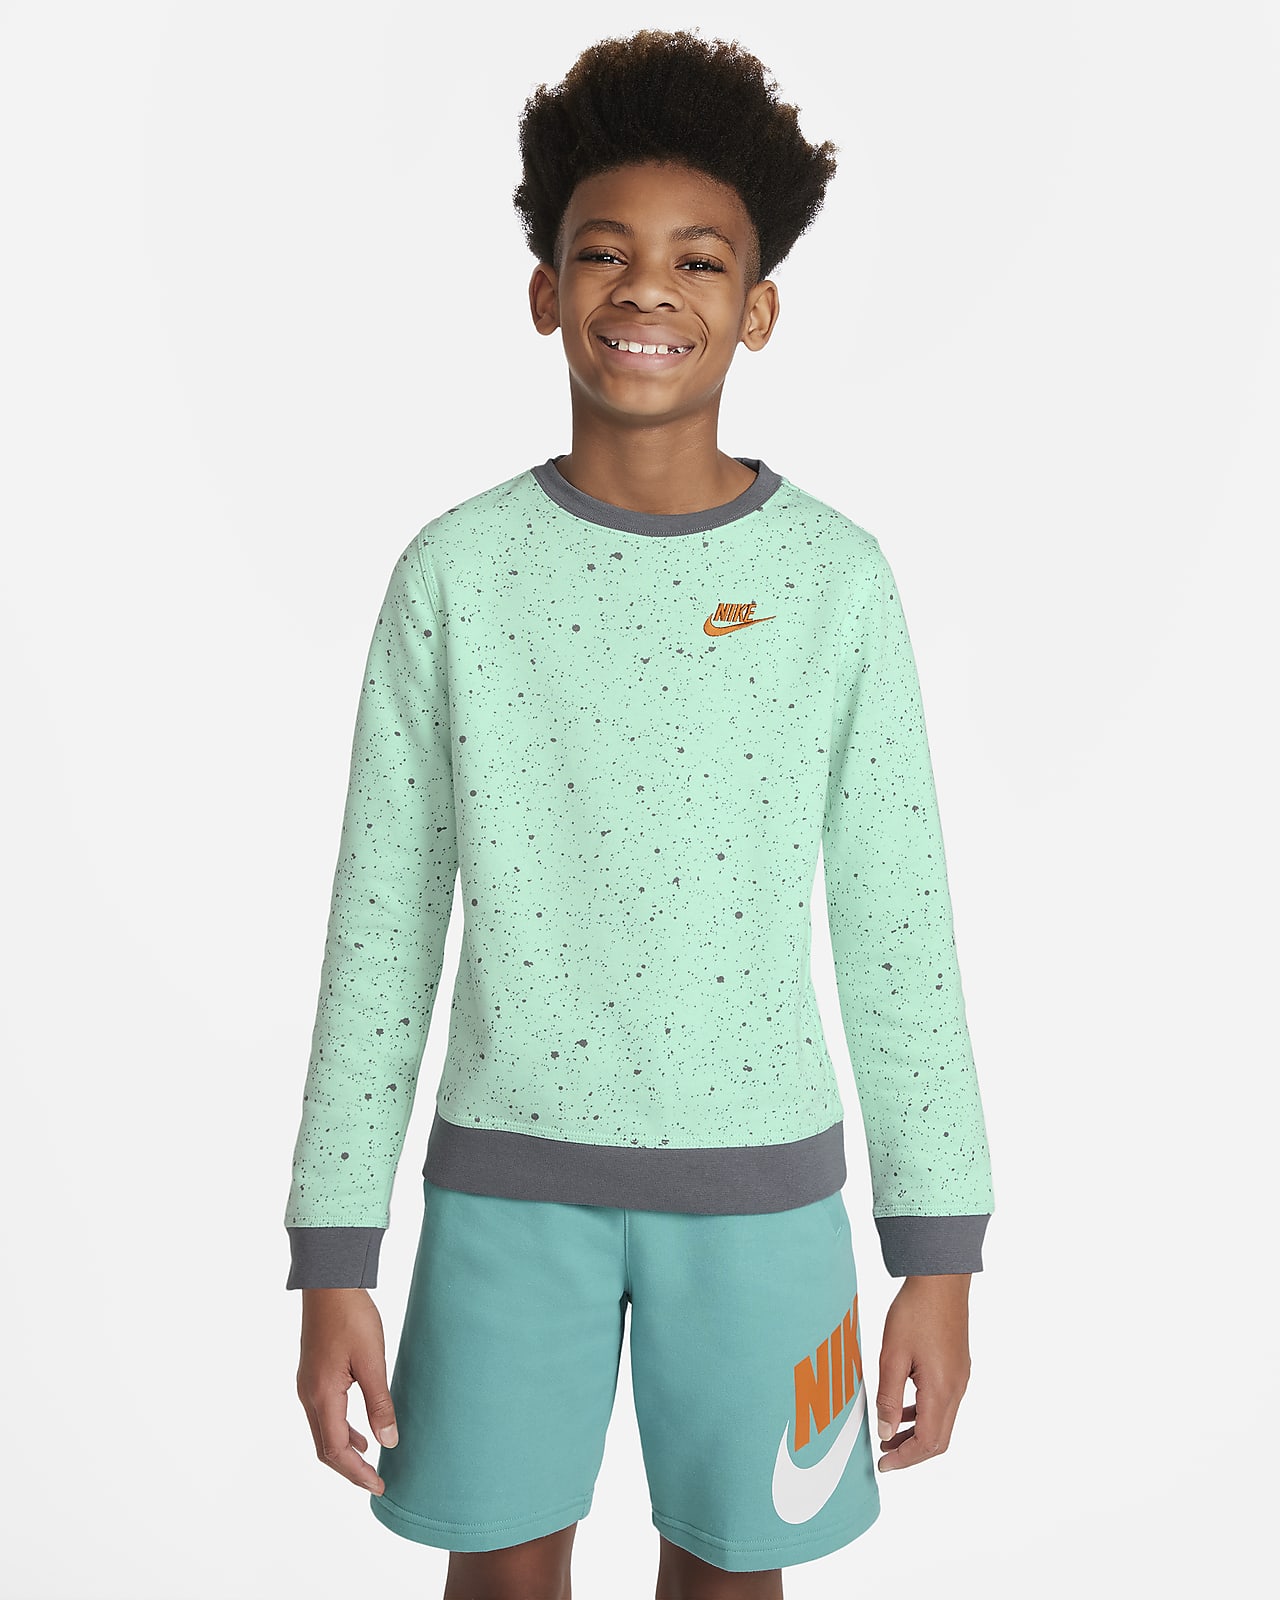 Nike Sportswear Older Kids' (Boys') Seasonal Printed Top